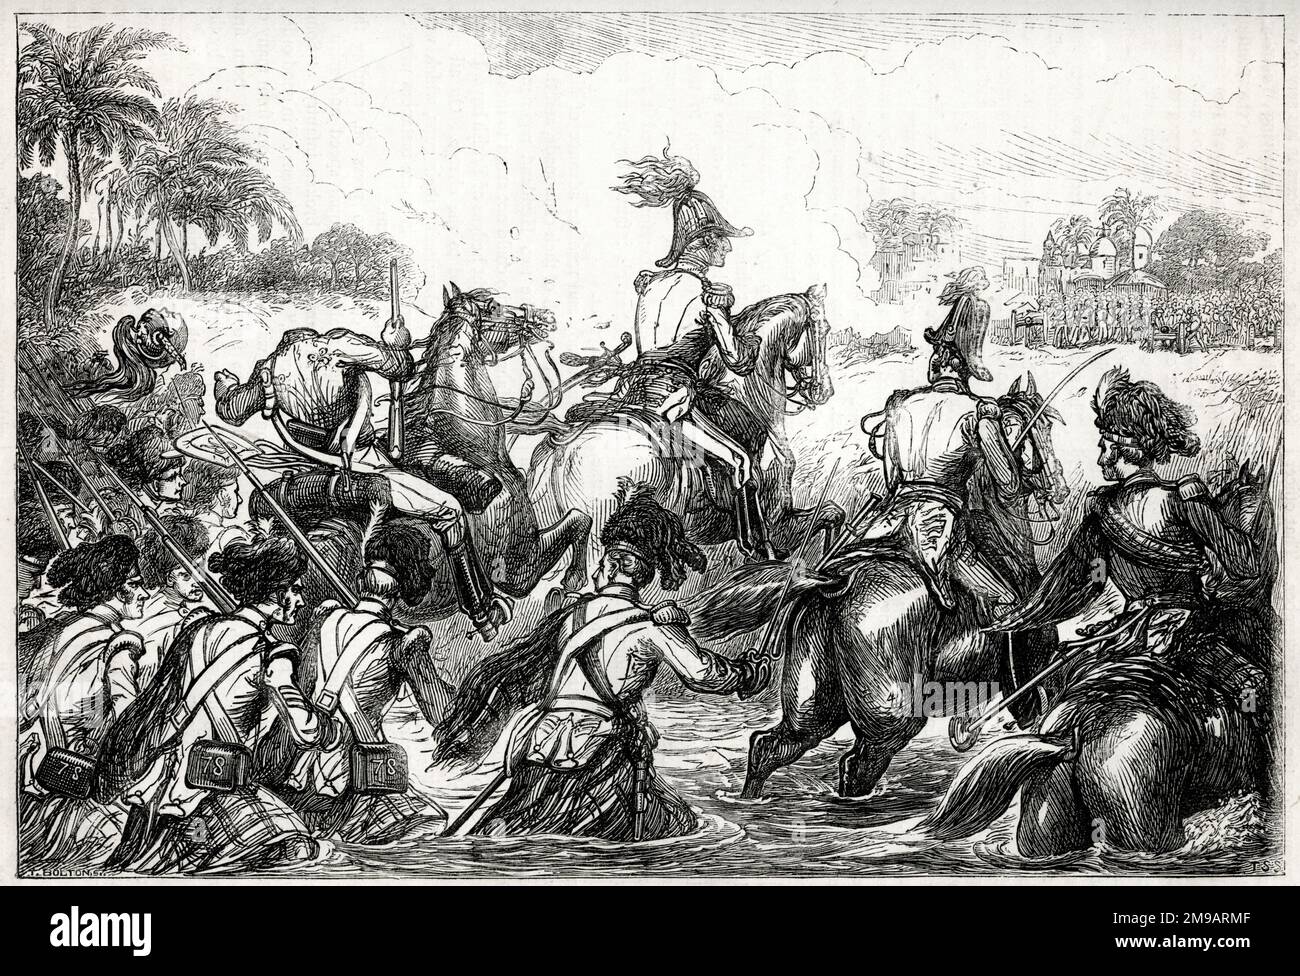 General Sir Arthur Wellesley (später Herzog von Wellington) fording the River Kaitna, Battle of Assaye, West India, 23. September 1803, between the Maratha Empire and the British East India Company, während des zweiten Anglo-Maratha Krieges (1803-1805). Gegen 15:00 gingen die Briten zum nördlichen Ufer der Kaitna, ohne Gegner zu sein, abgesehen von einem weit entfernten Schikanenfeuer der Maratha-Kanone, das größtenteils ungenau war, aber es gelang, Wellesleys Dragunenpfleger zu enthaupten, wie in dieser Abbildung gezeigt. Stockfoto